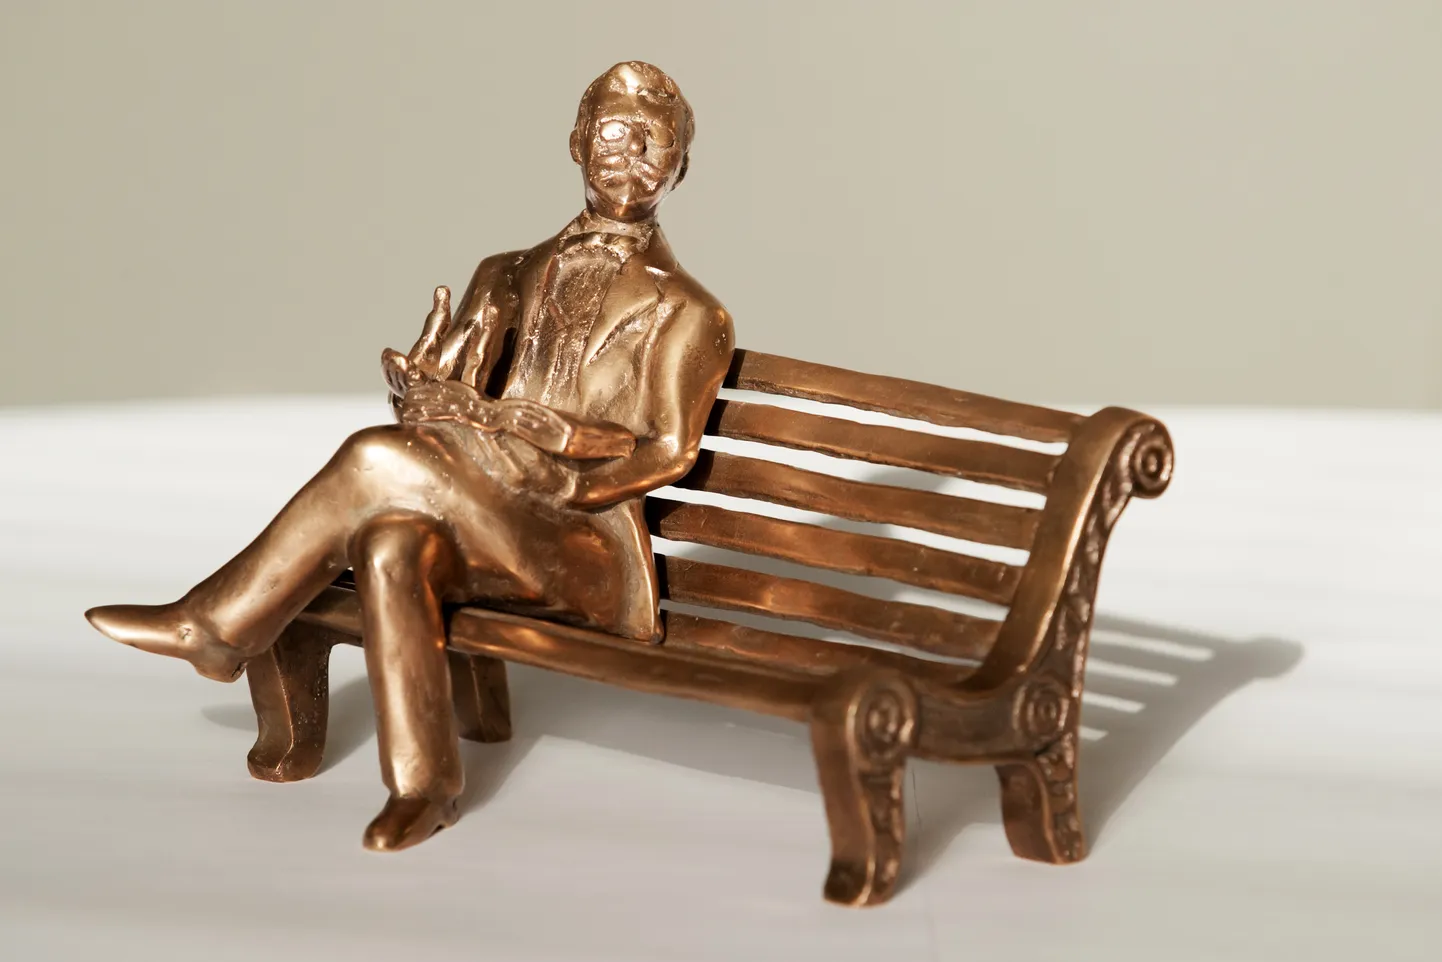 Скульптор Айвар Симсон изготовил макет, на котором Эдуард Борнхёэ сидит на скамейке, а в руках у него открытая книга.